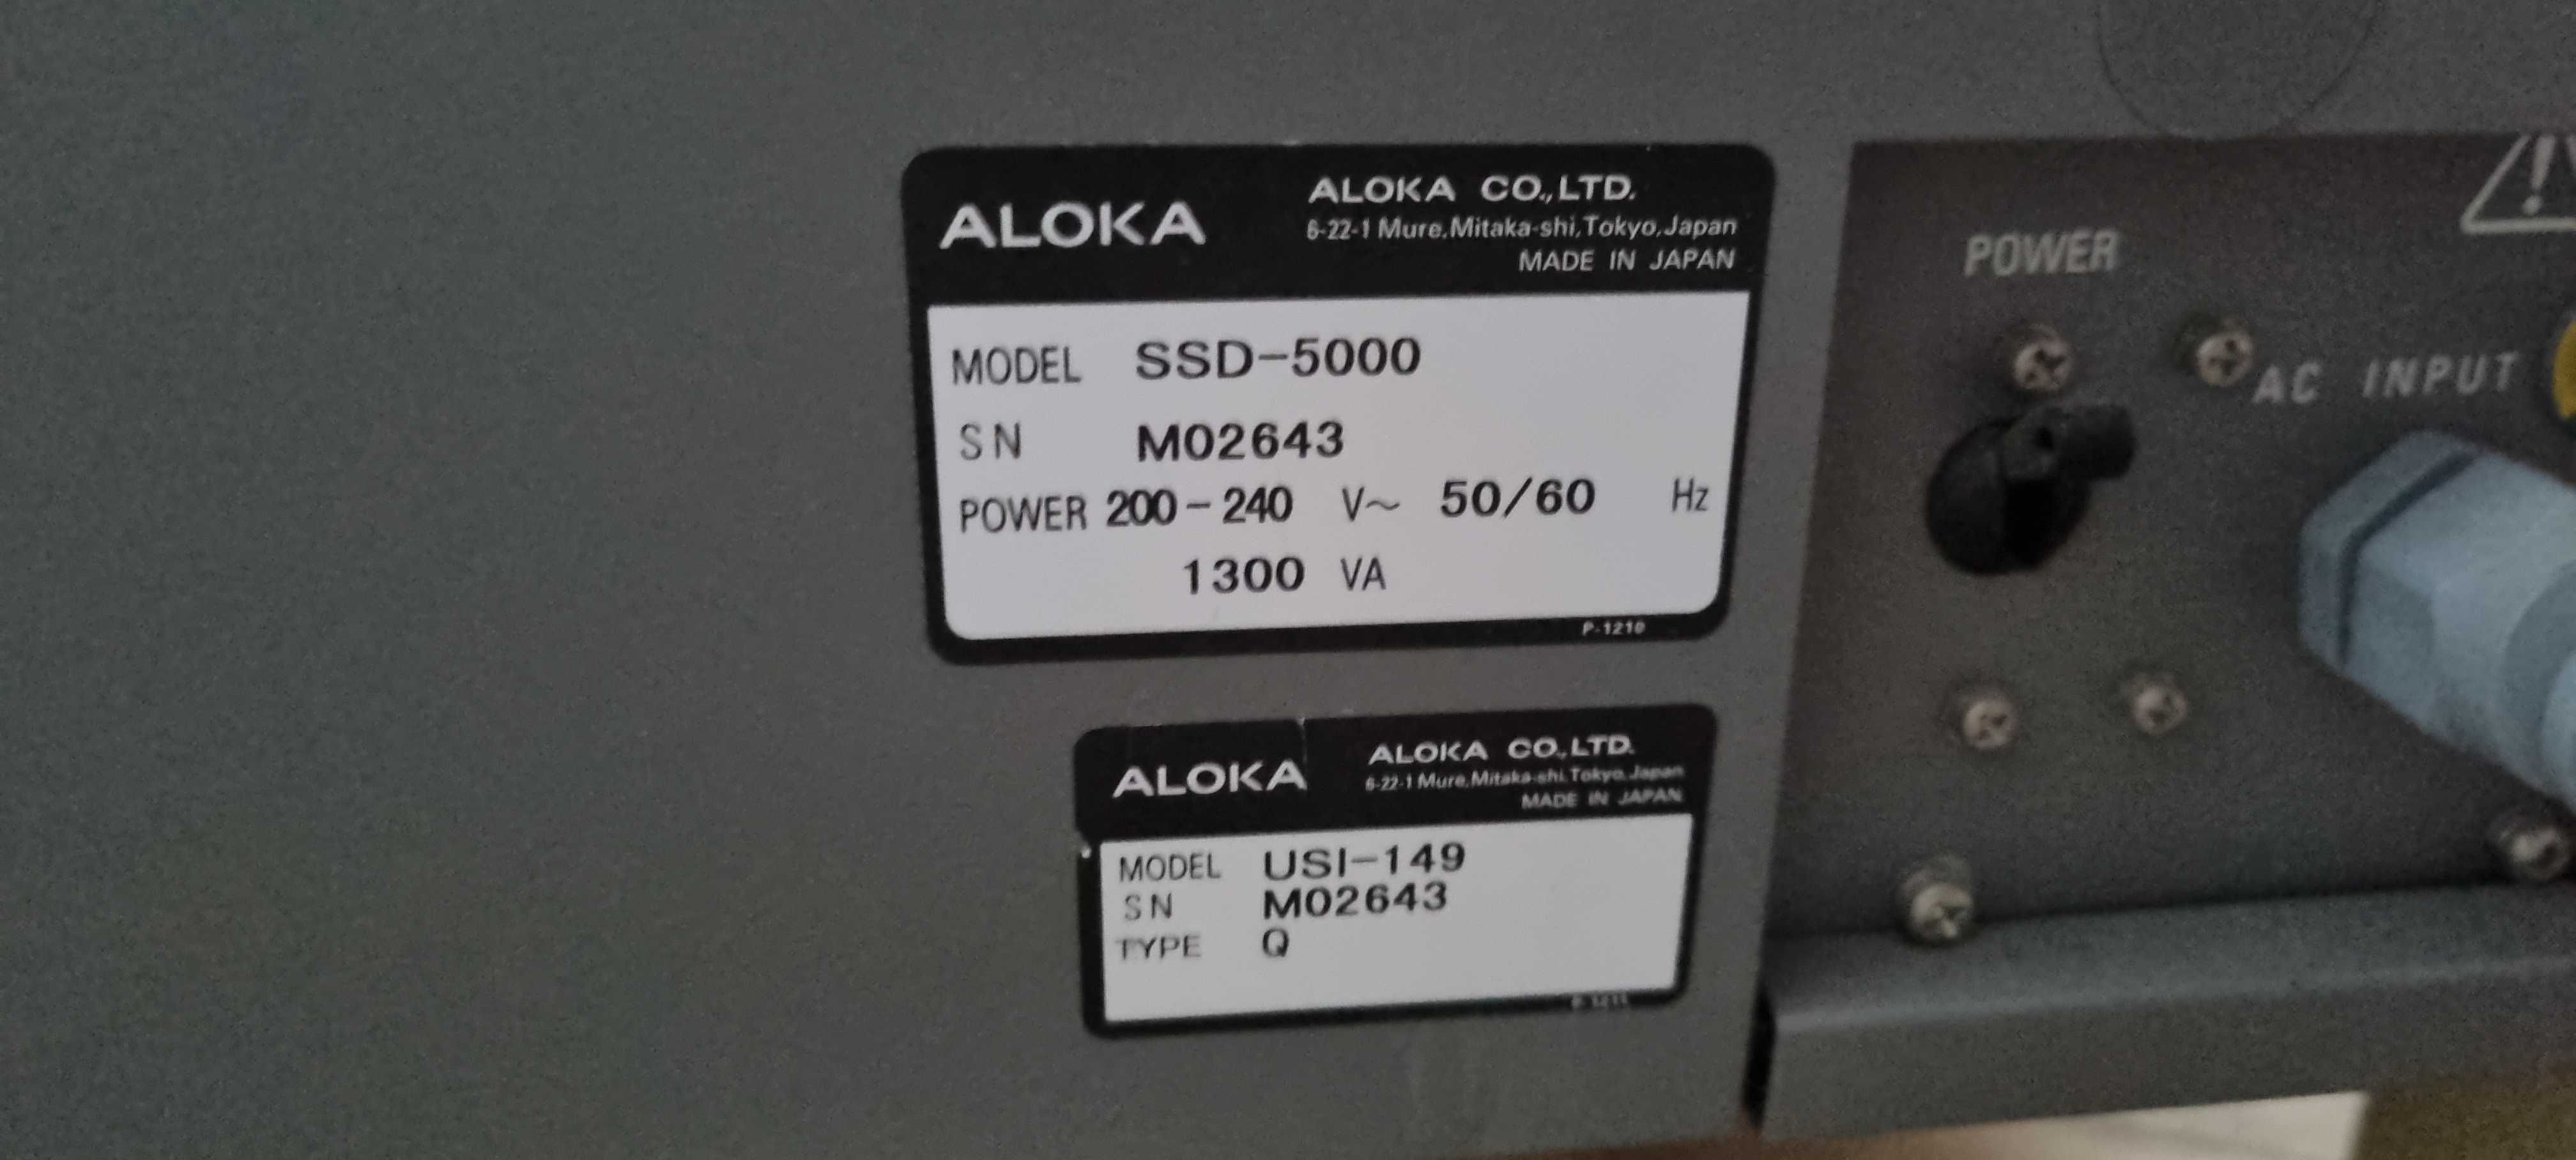 УЗД апарат ALOKA SSD-5000